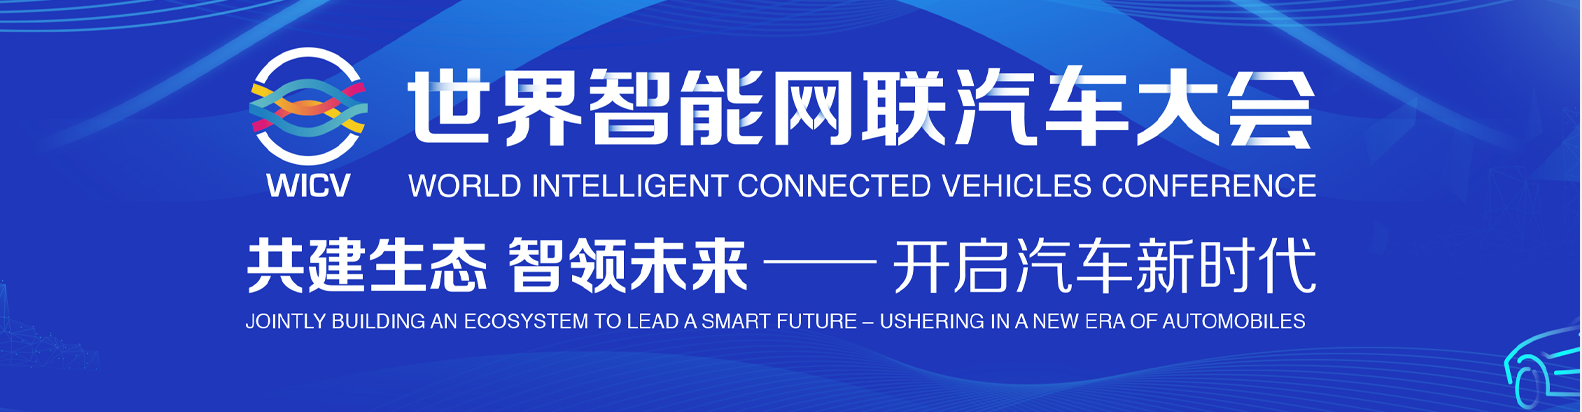 2020北京世界智能网联汽车大会暨中国（北京）国际节能与新能源汽车展览会